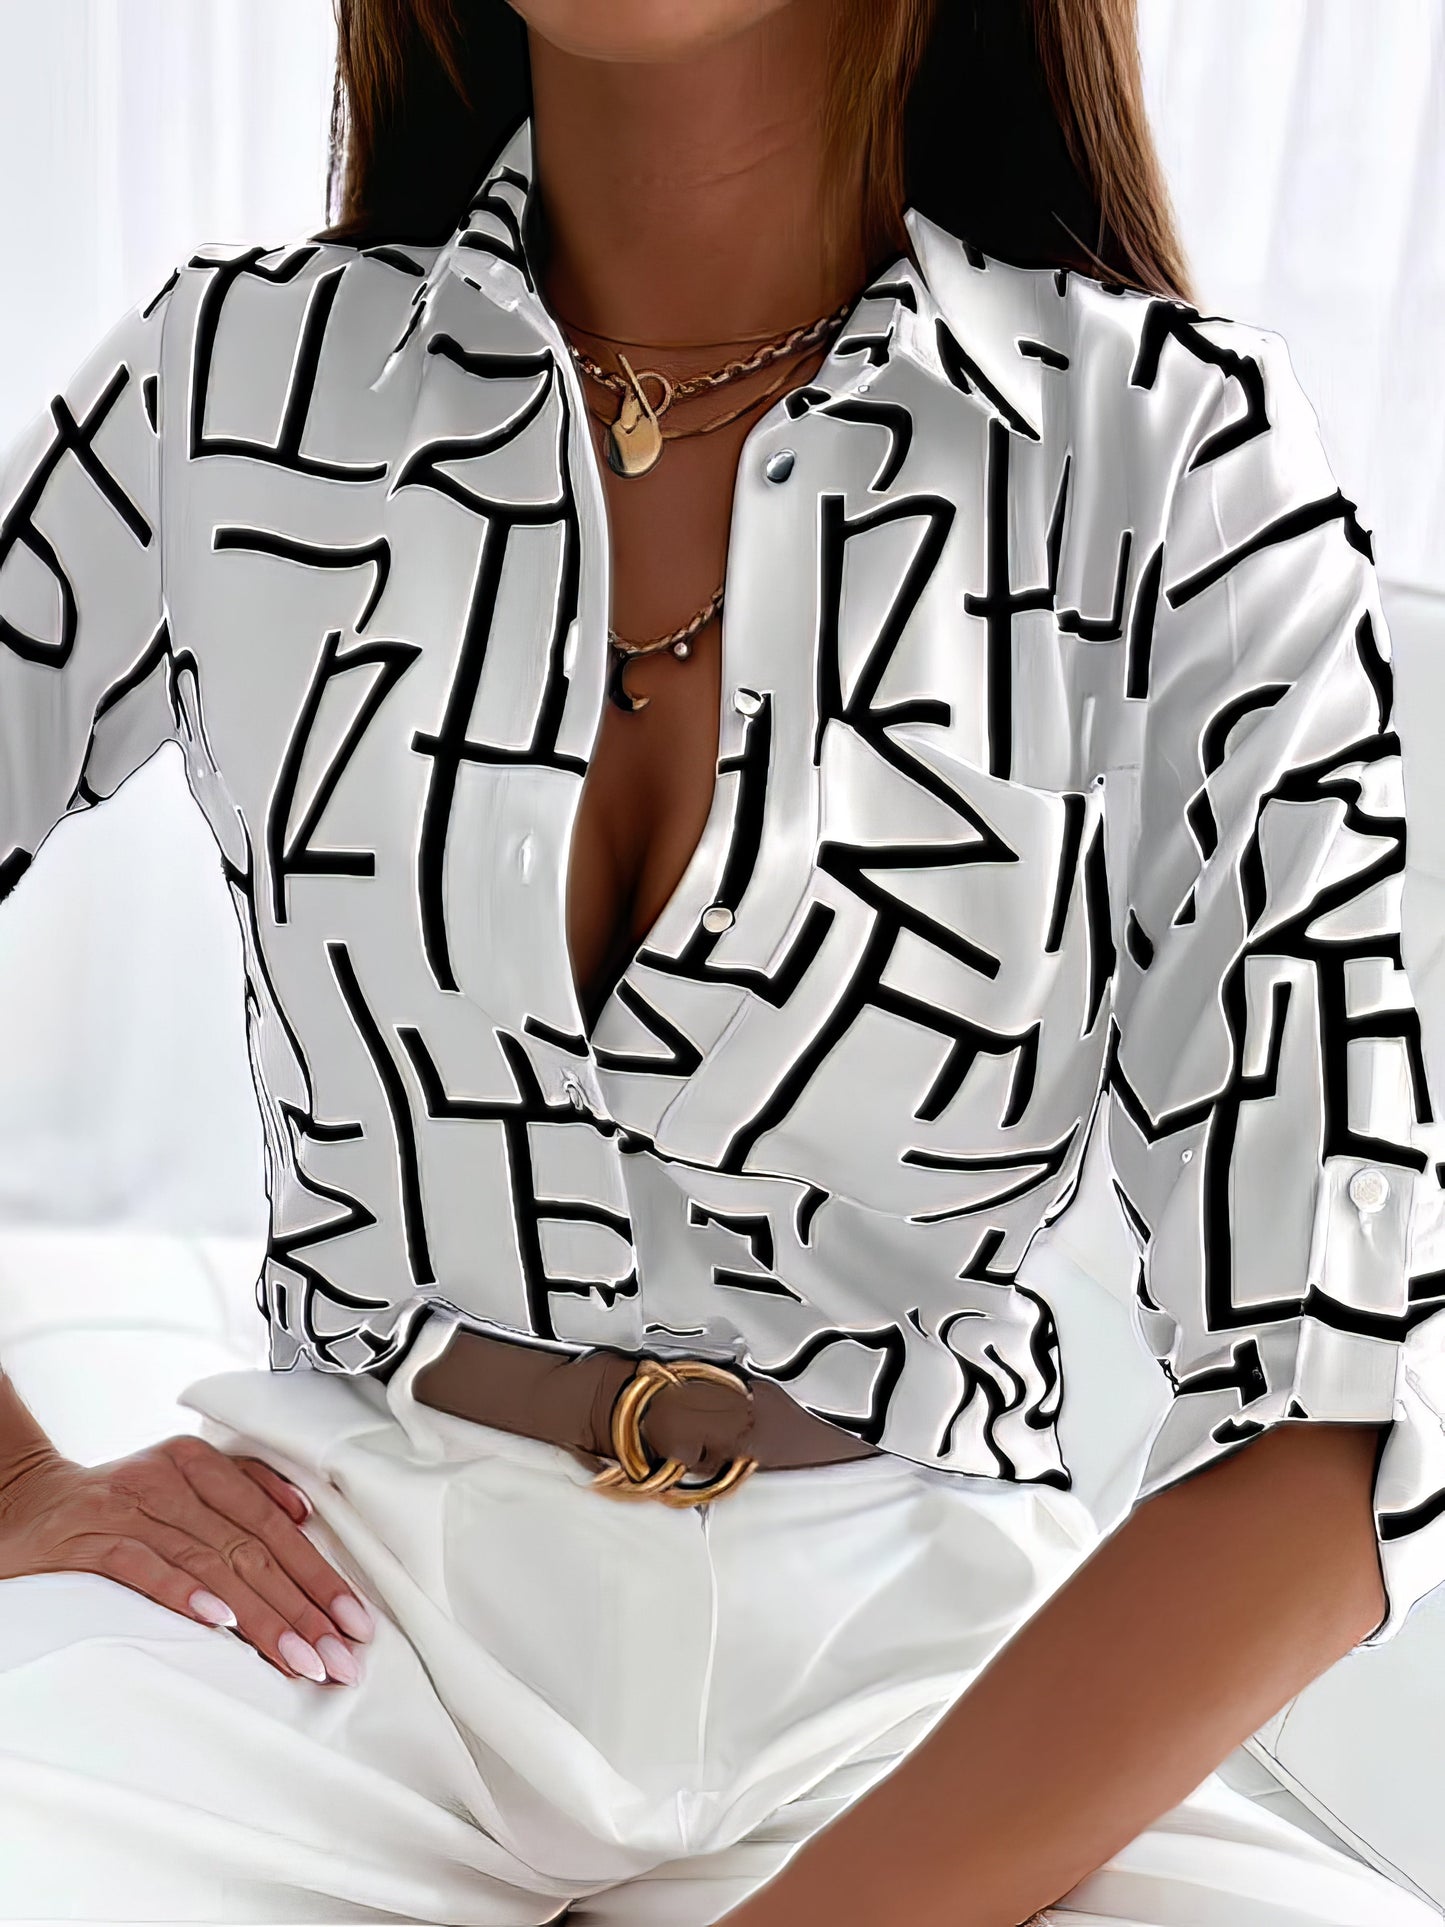 Blouses - Striped Basic Shirt Collar Standard Summer Blouse - MsDressly